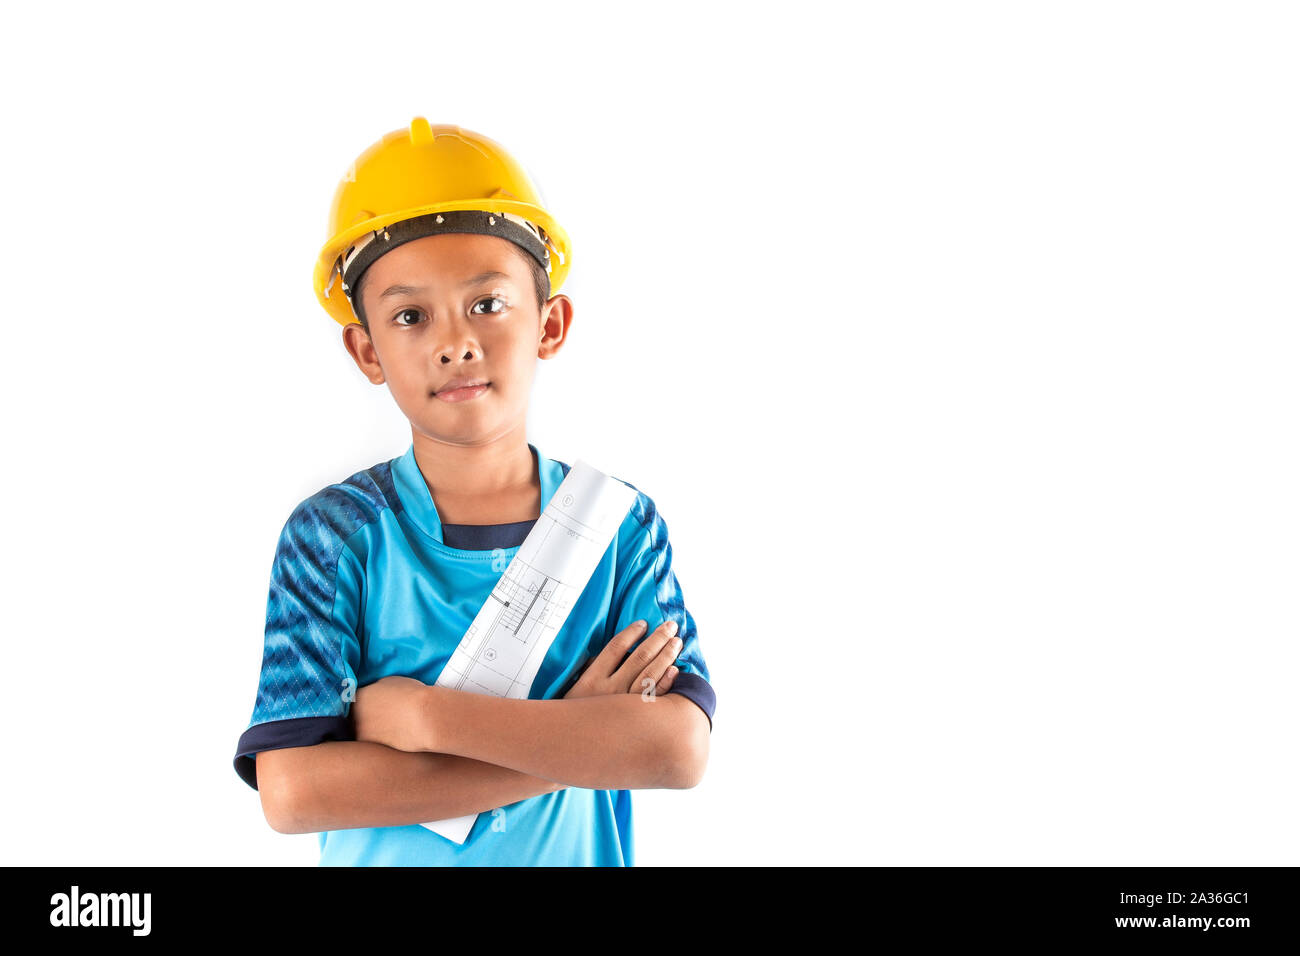 Il ragazzino in sogno vuole essere architetto o ingegnere in futuro, isolato su sfondo bianco Foto Stock